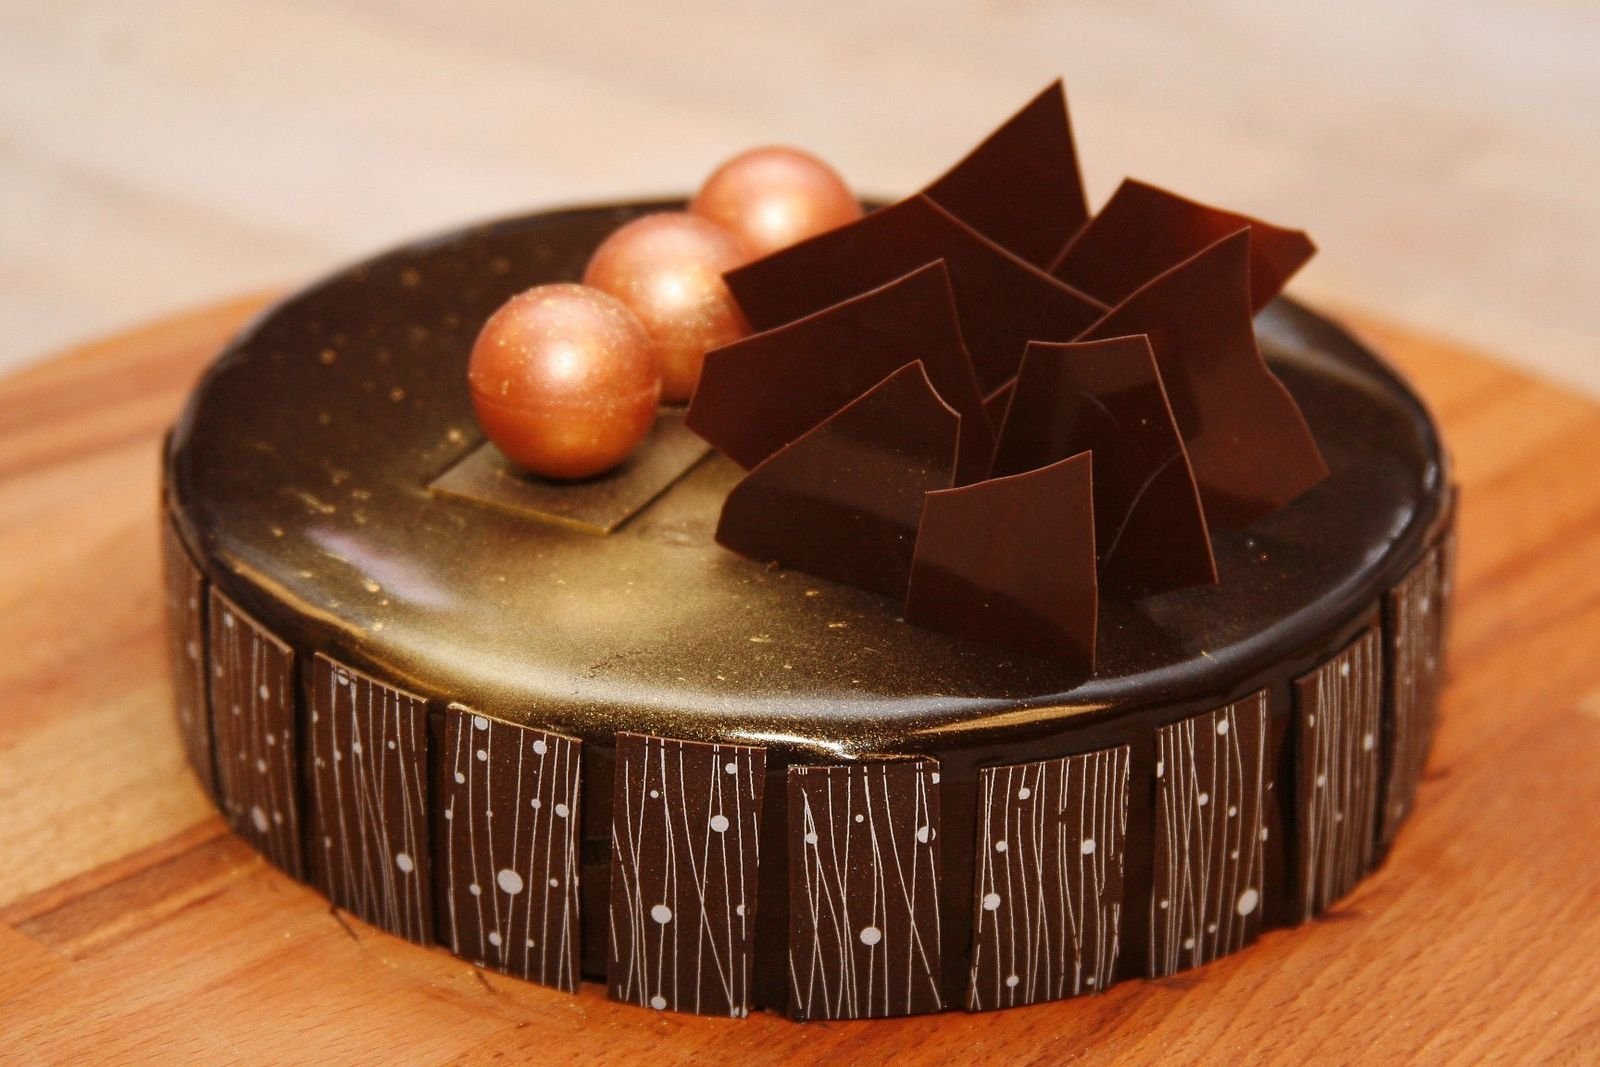 Choco decoration на русском. Украшения из шоколада. Торт с шоколадным декором. Украшения из шоколада для торта. Декор из шоколада для торта.